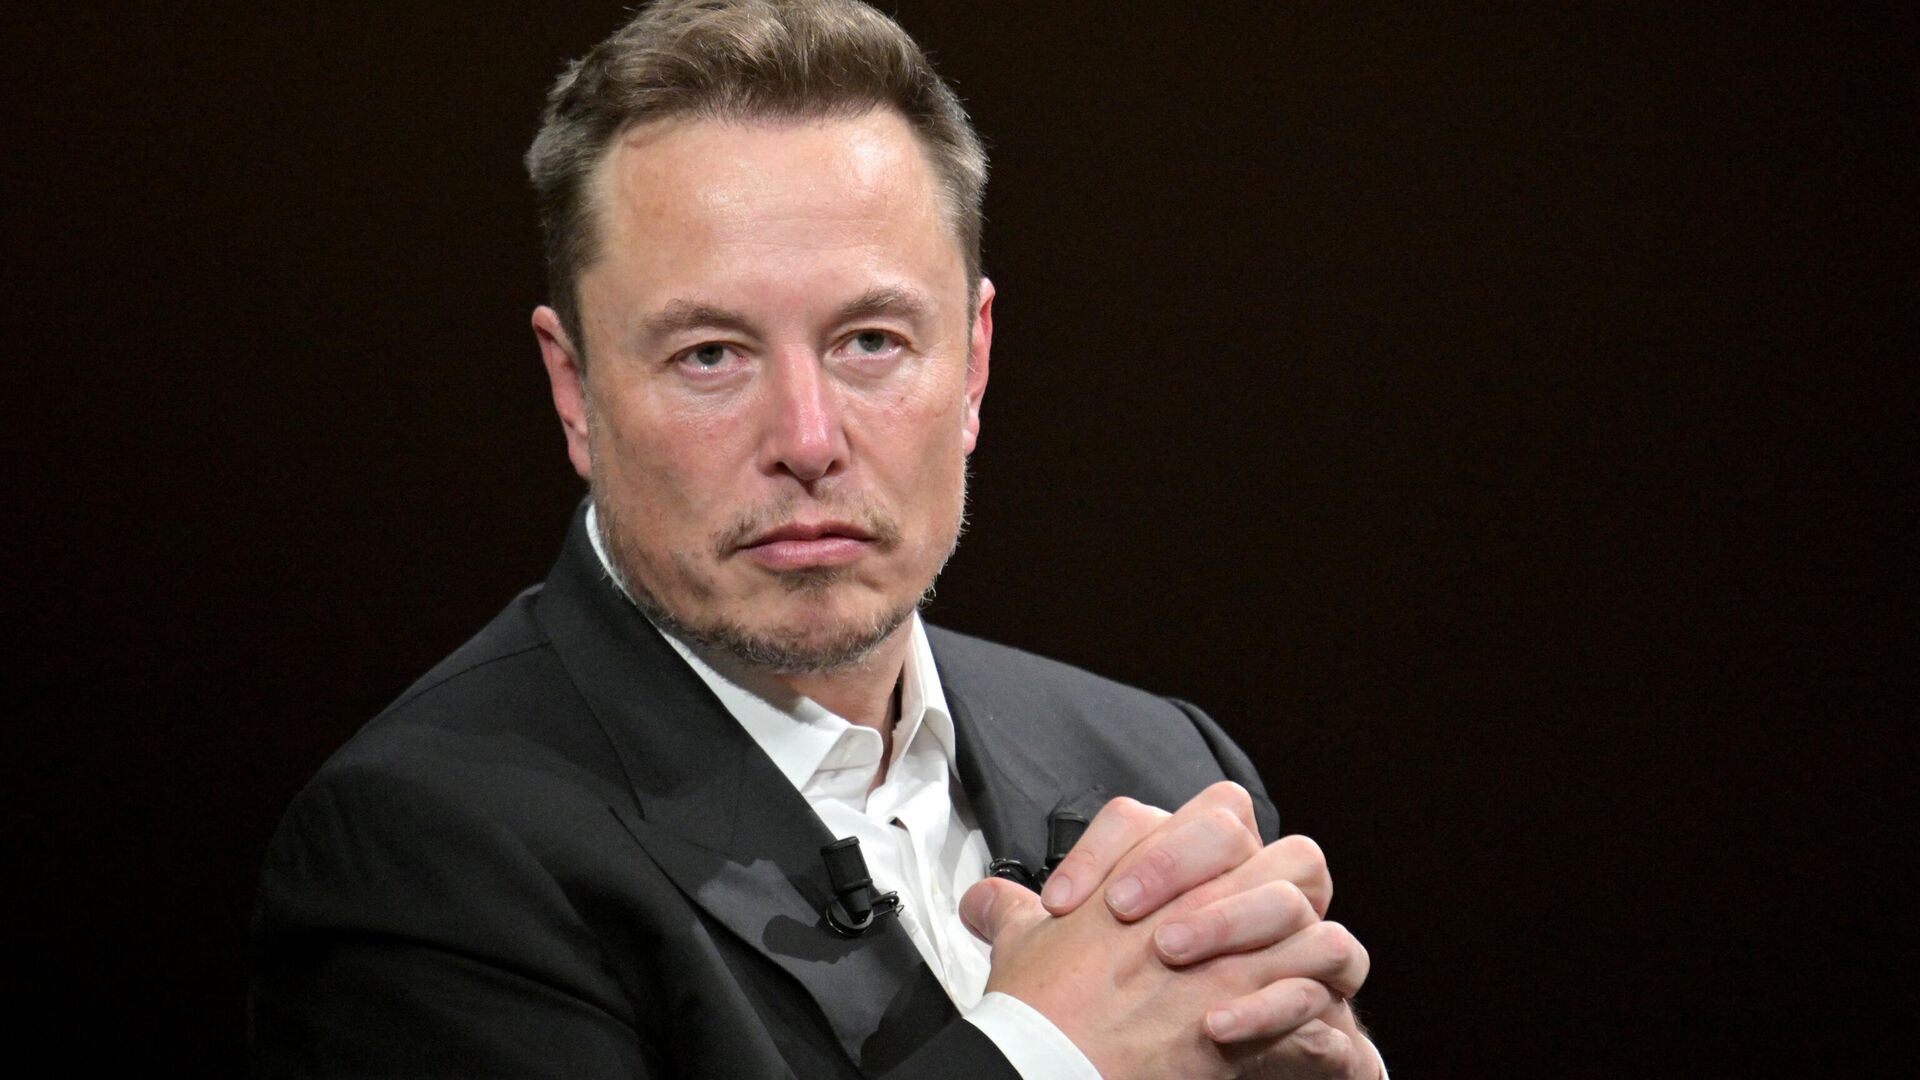 Elon Musk, CEO da SpaceX, X (anteriormente conhecida como Twitter) e da Tesla, fala durante Fvisita à feira de inovação e startups de tecnologia Vivatech no centro de exposições Porte de Versailles, Paris, França, 16 de junho de 2023 - Sputnik Brasil, 1920, 11.11.2023